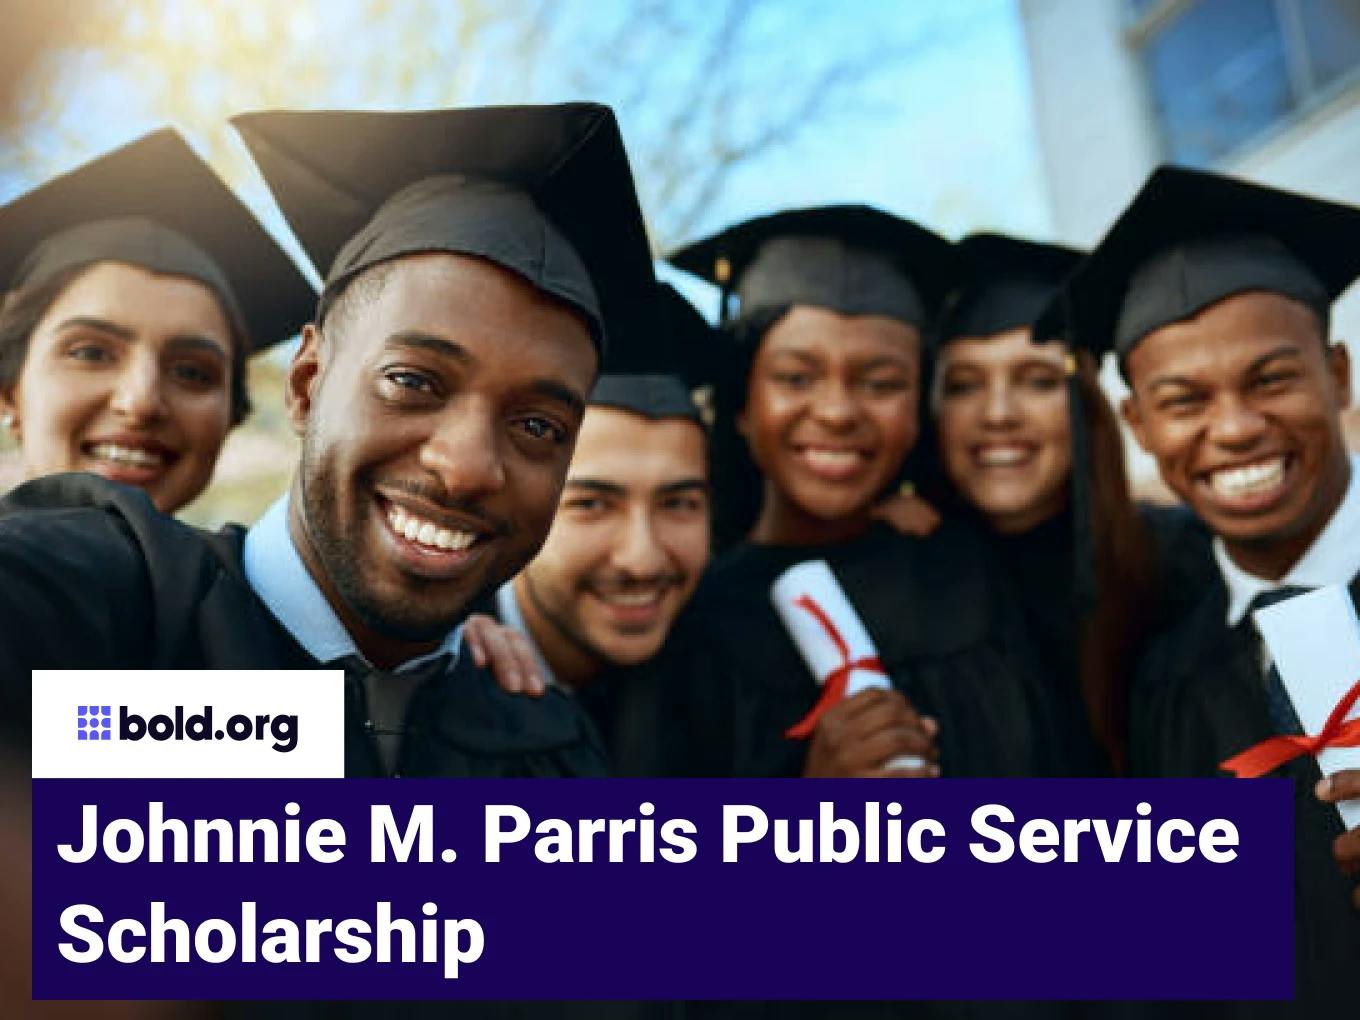 Johnnie M. Parris Public Service Scholarship